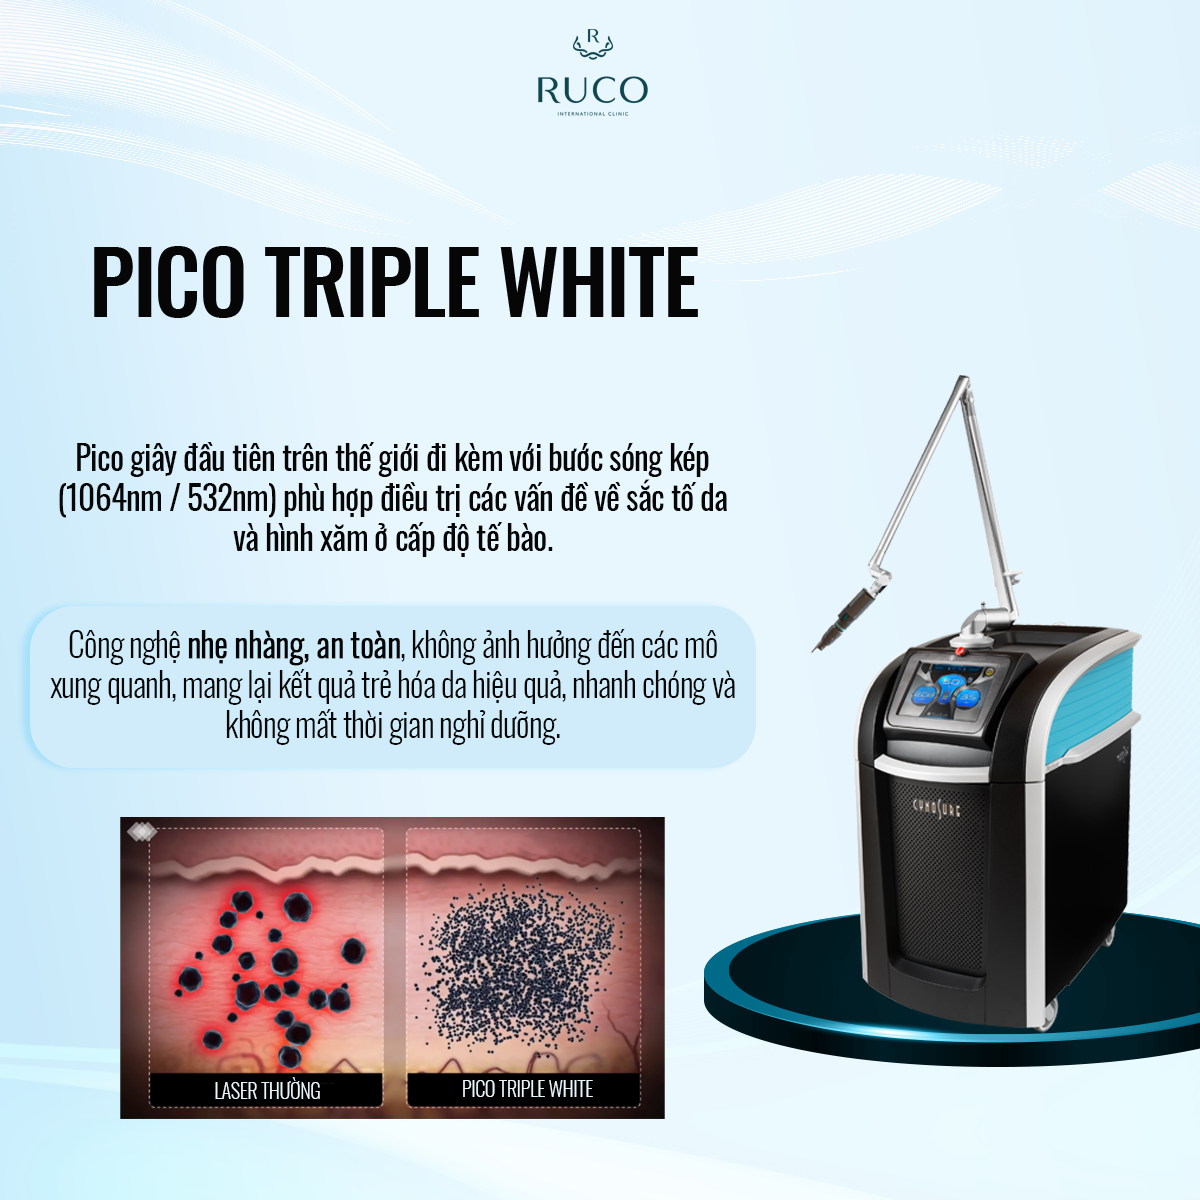 công nghệ pico triple white điều trị da toàn diện